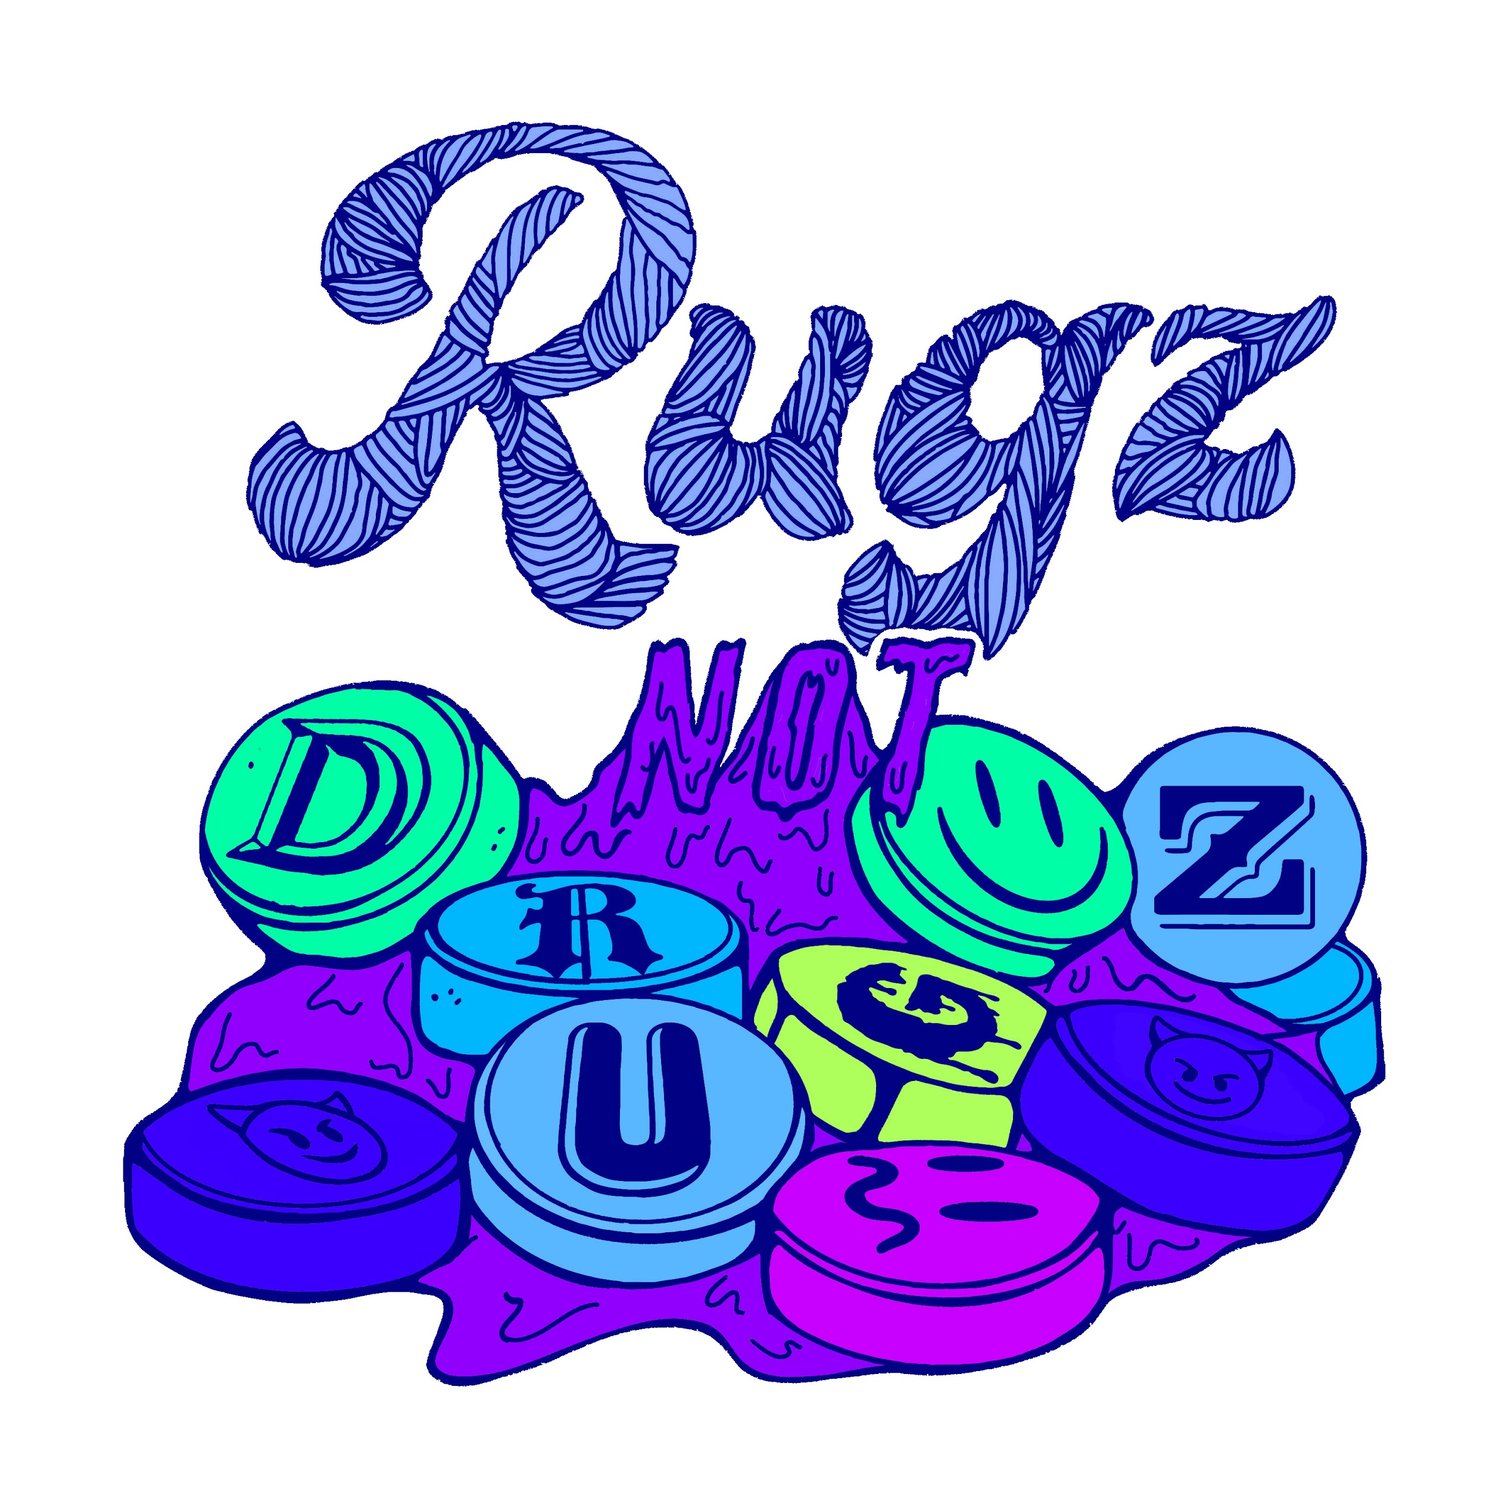 Rugz Not Drugz Home